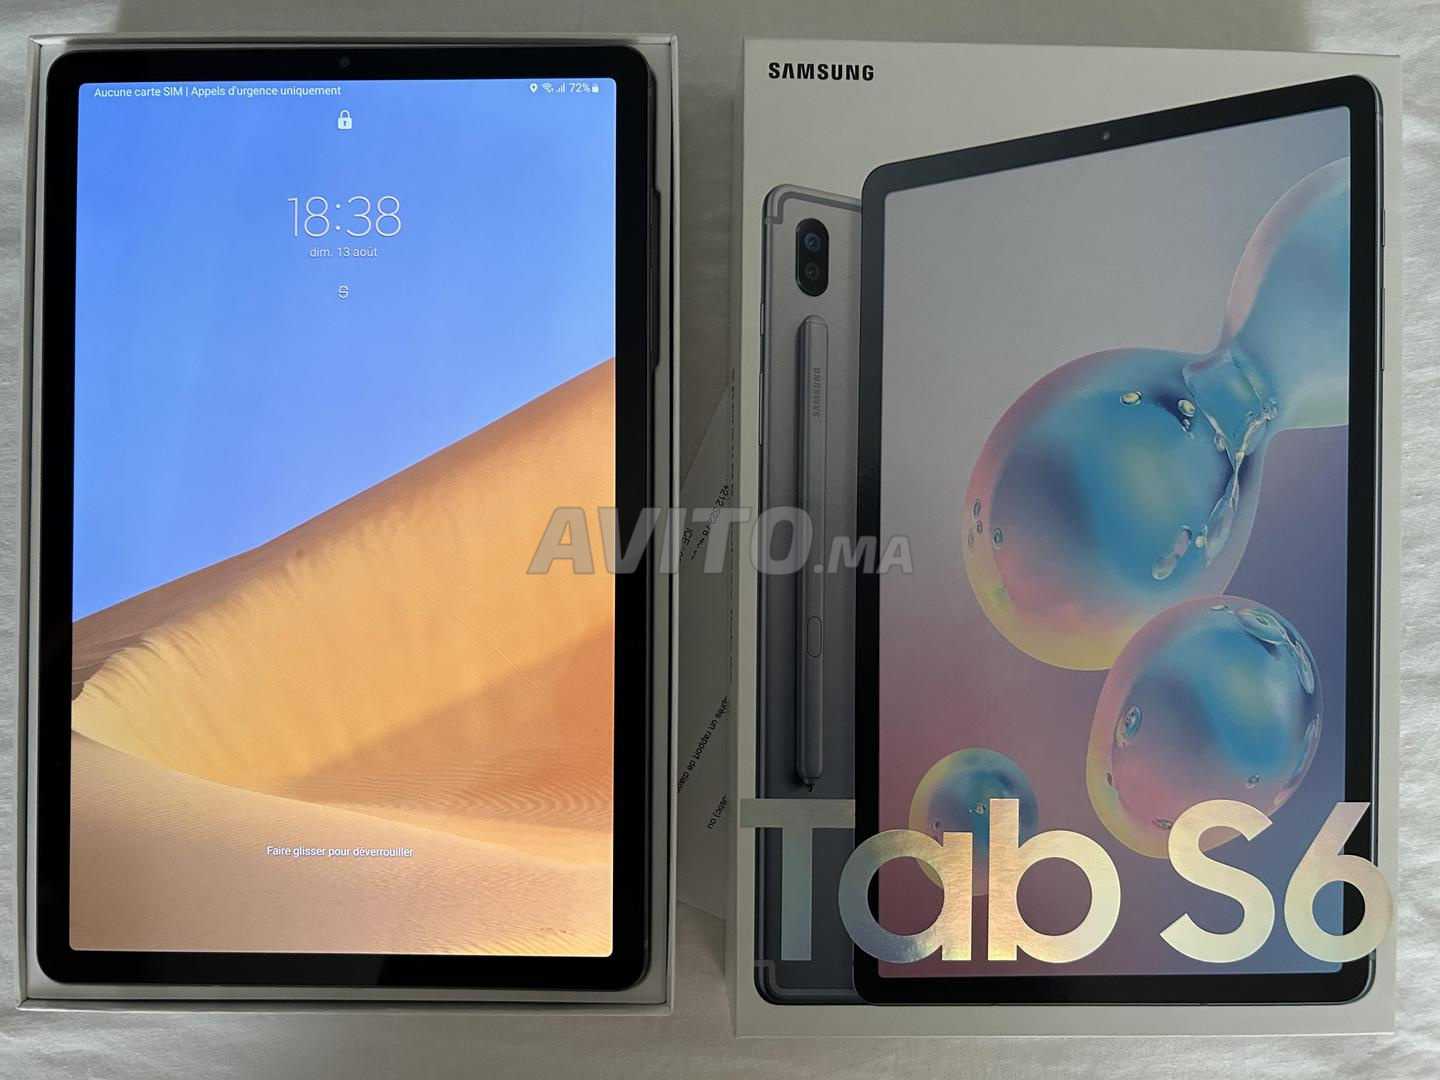 Tablette Samsung Galaxy Tab S9 FE 5G - (6GB / 128Go) prix Maroc